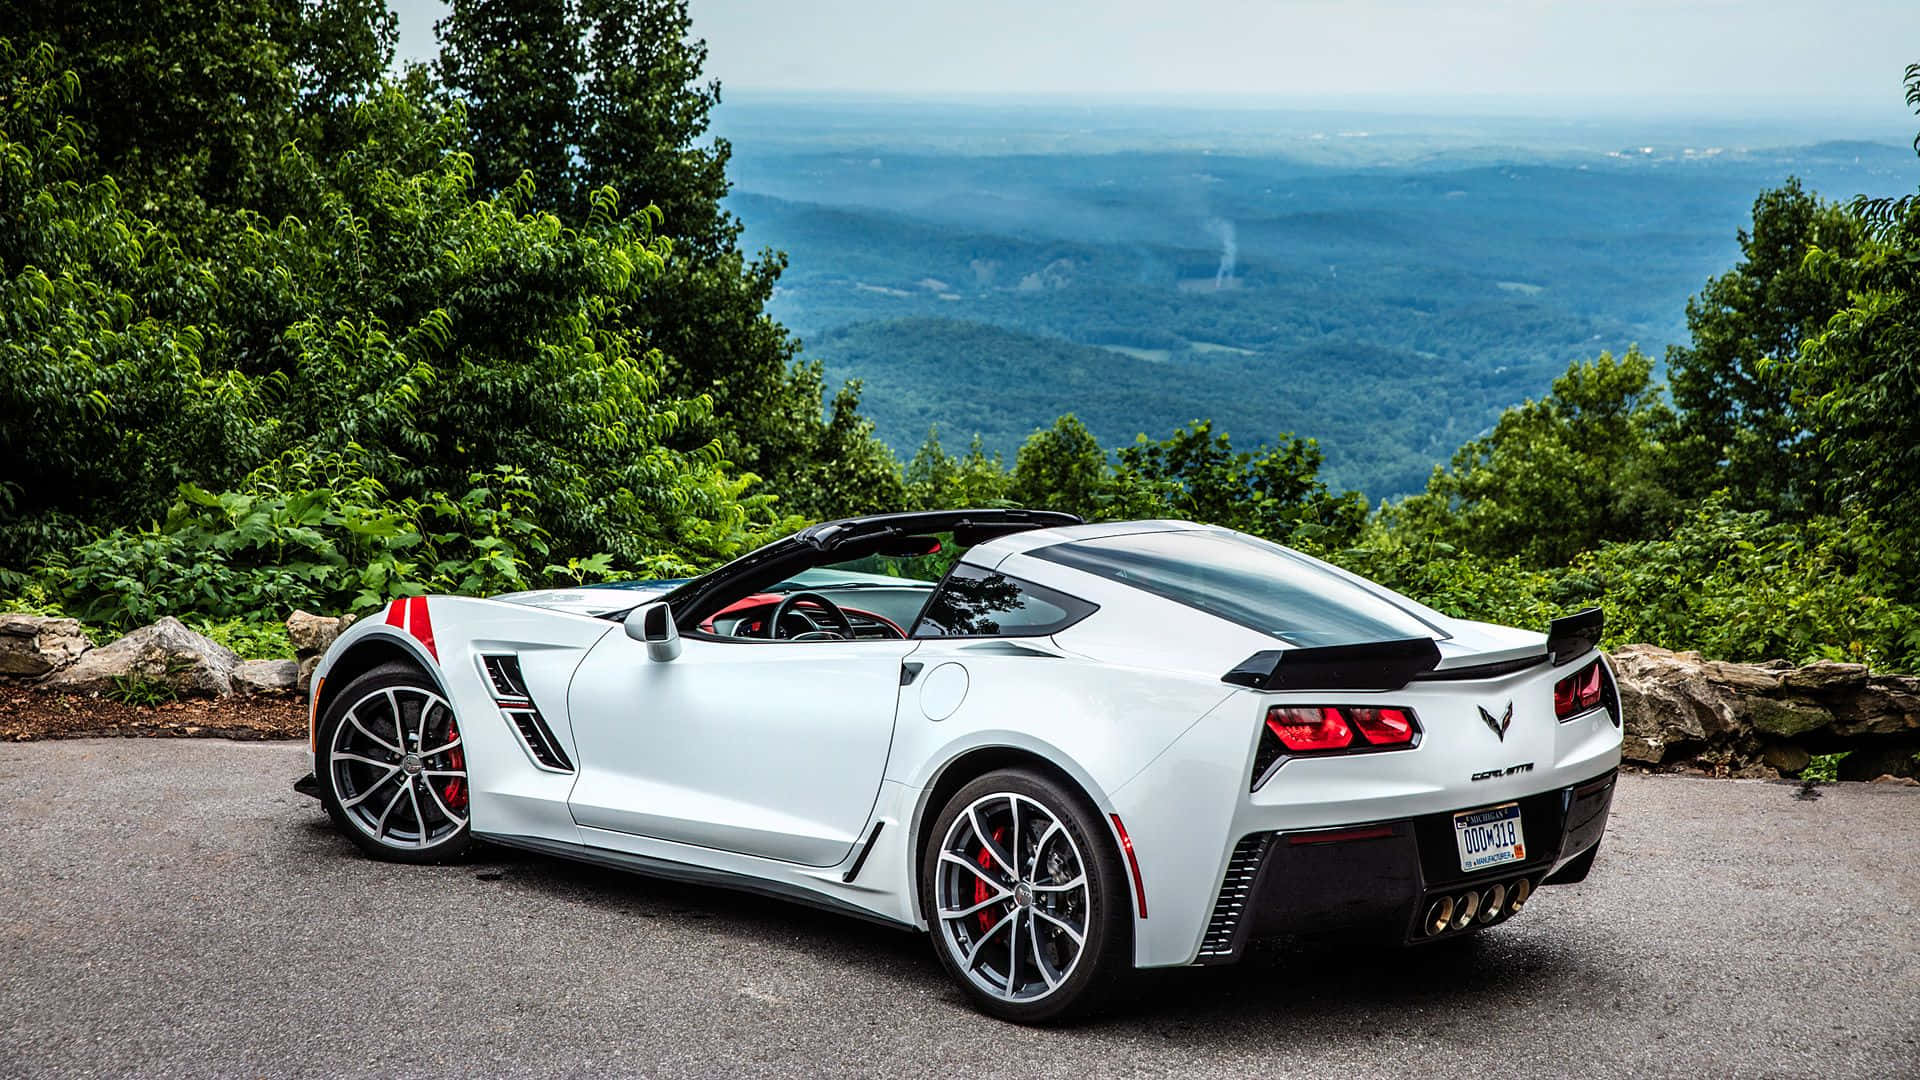 Impresionantechevrolet Corvette Grand Sport Recorriendo La Carretera. Fondo de pantalla